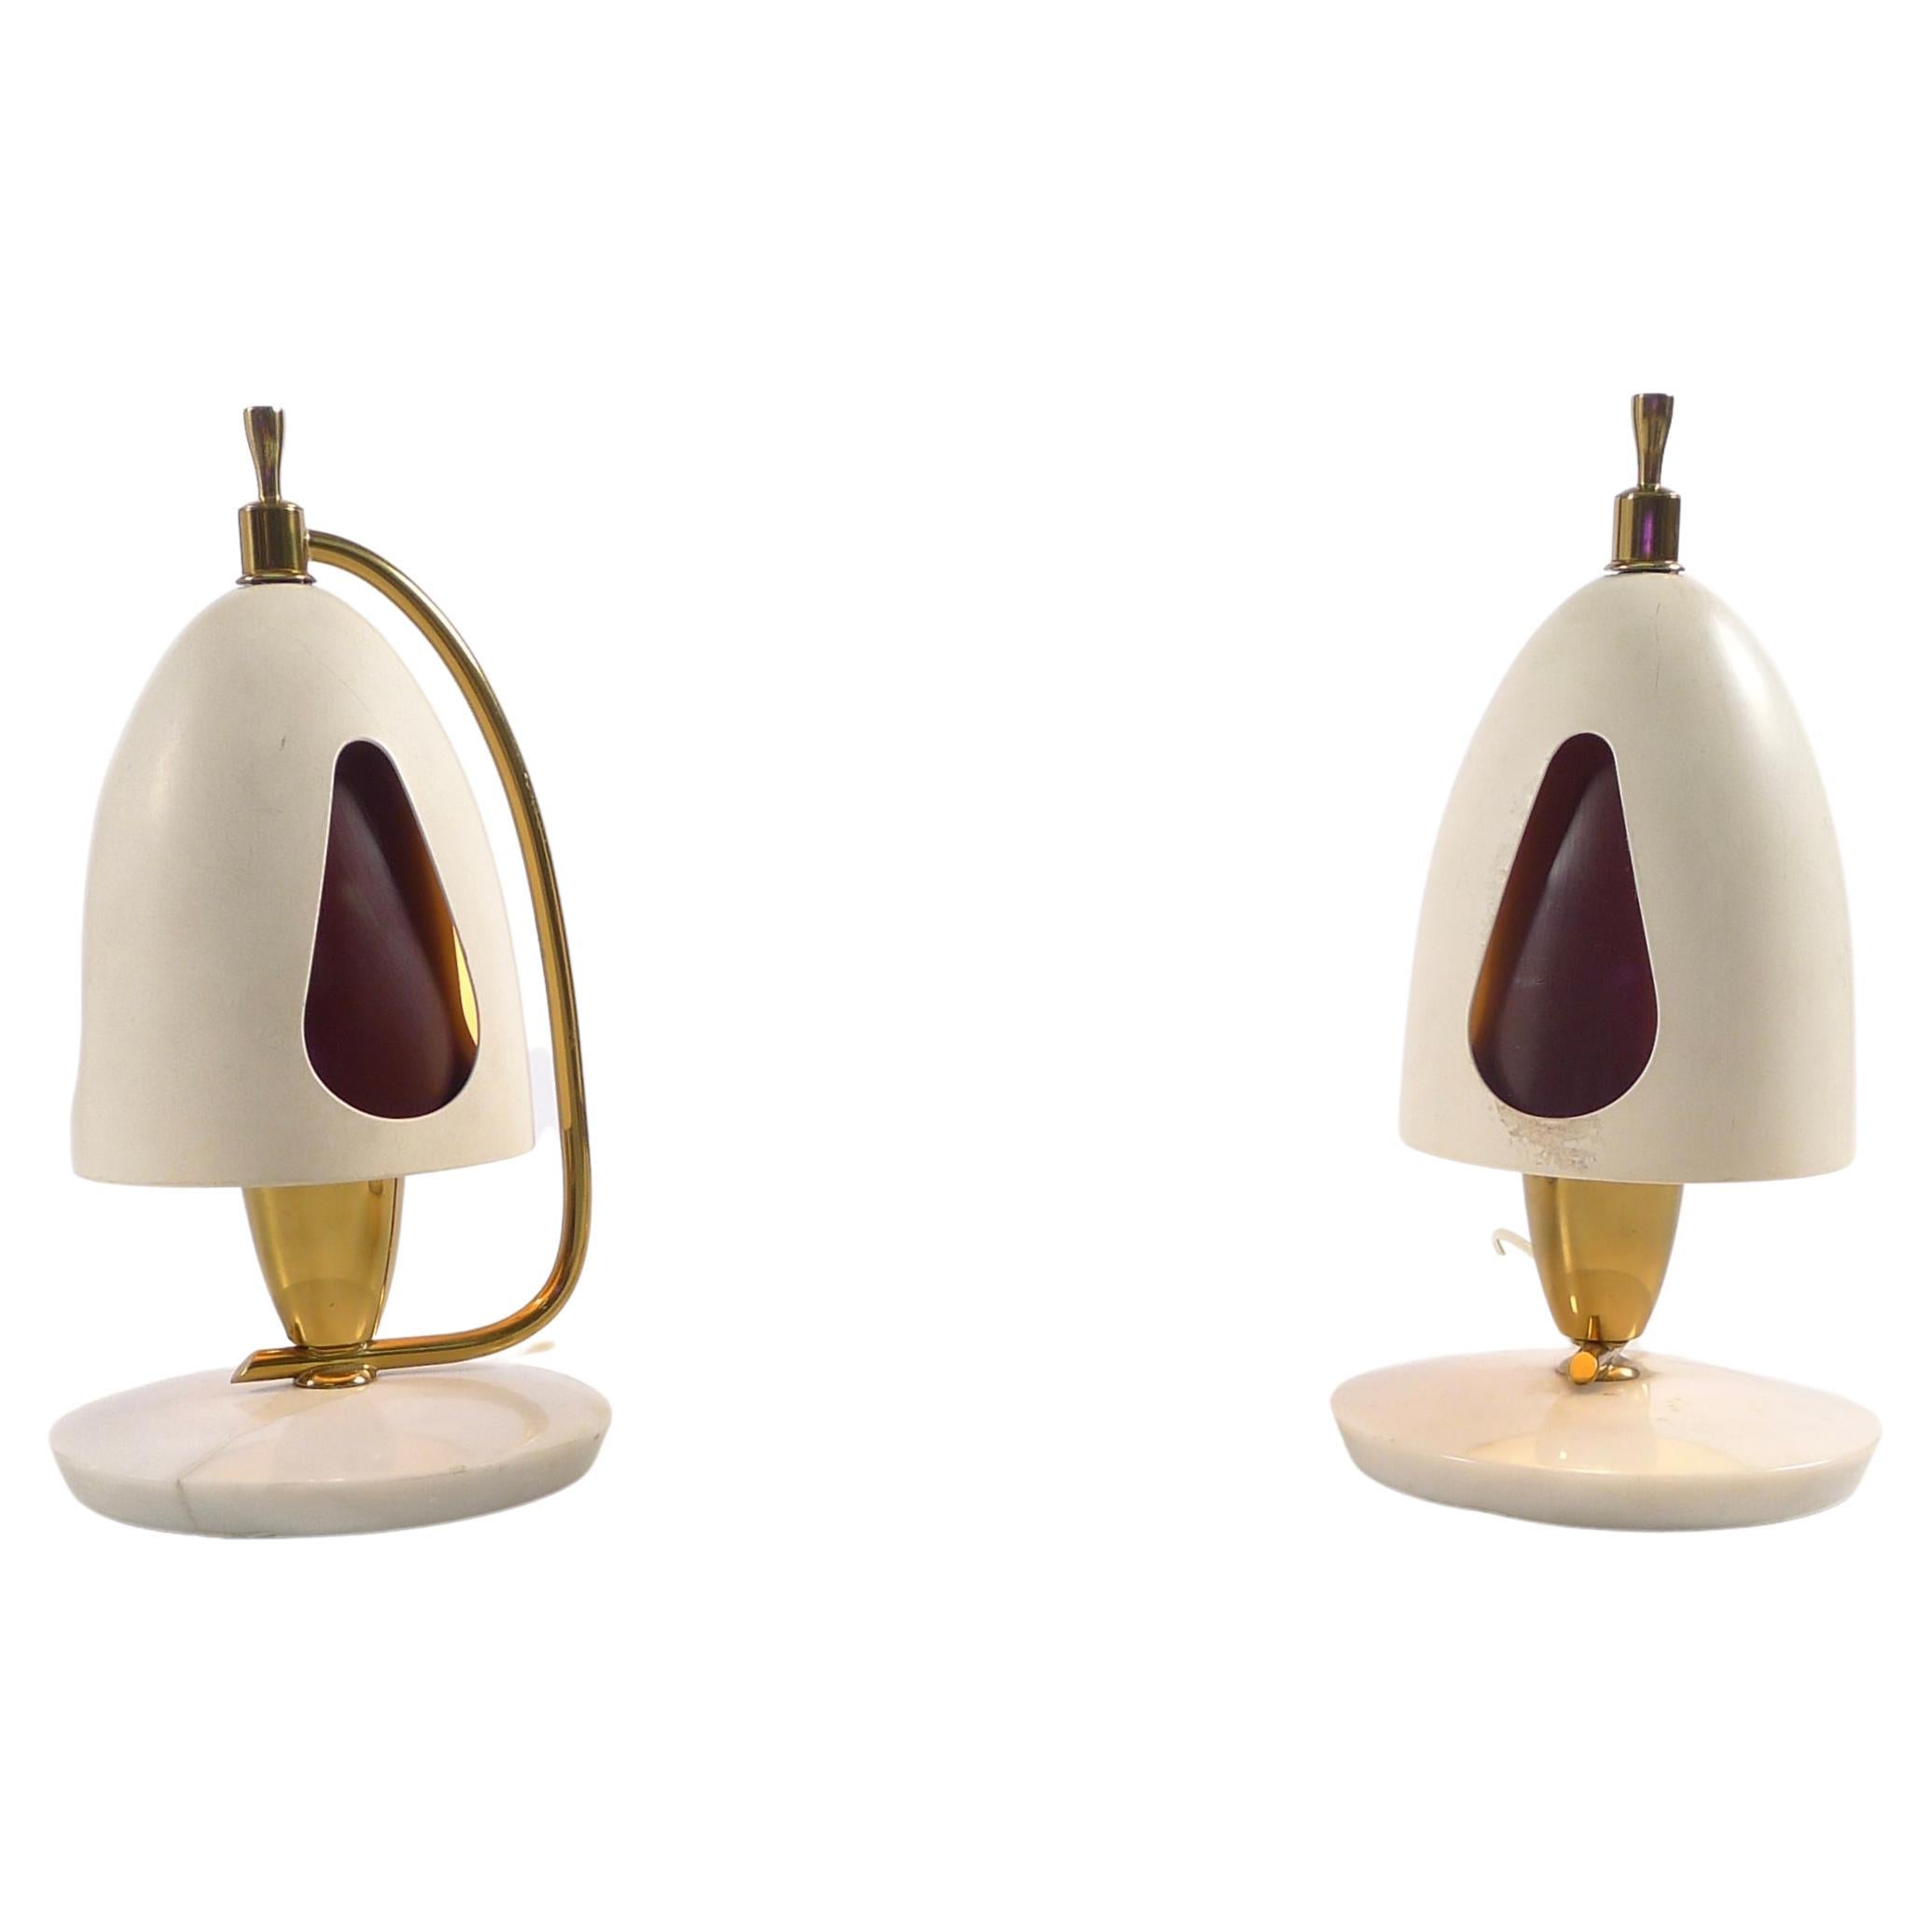 Angelo Lelii for Arredoluce, Pair of Italian table lamps, model 12398, 1952